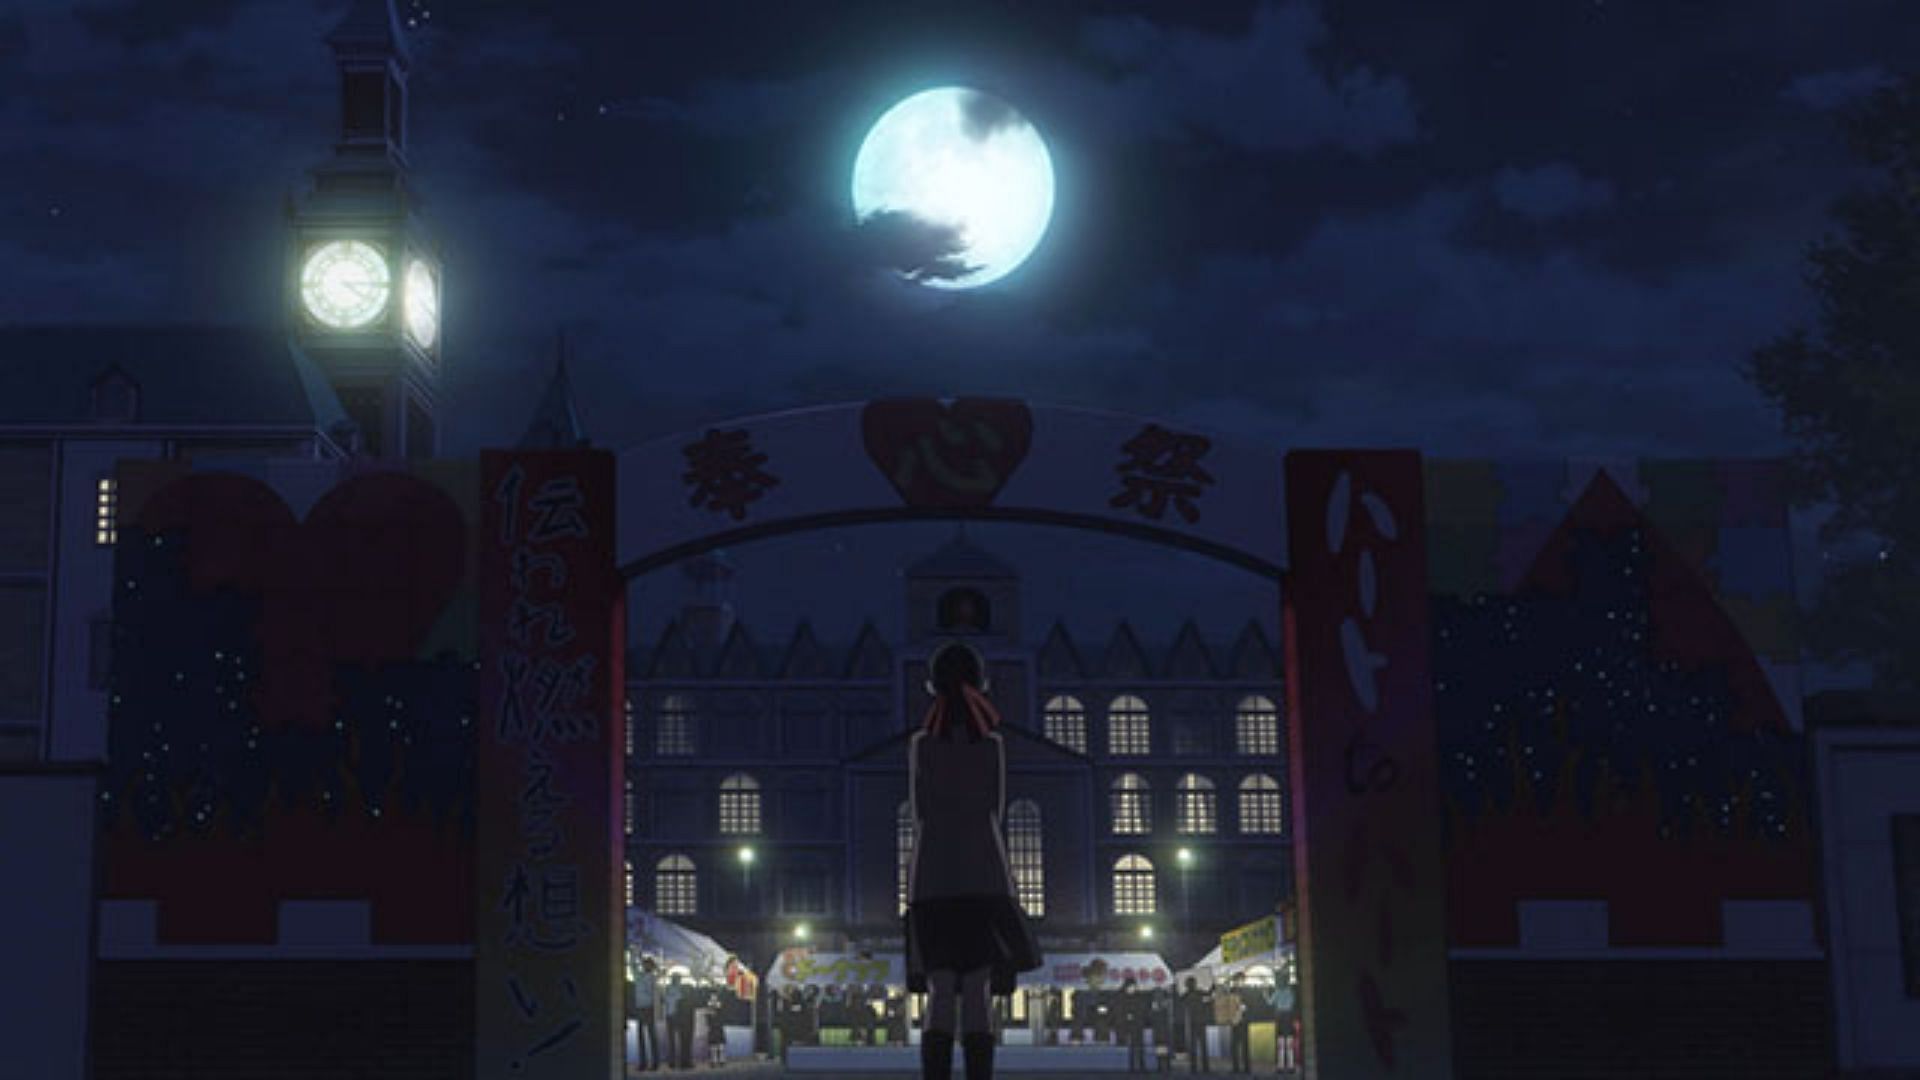 Kaguya-sama: Love Is War ~ Ultra Romantic Episode 9